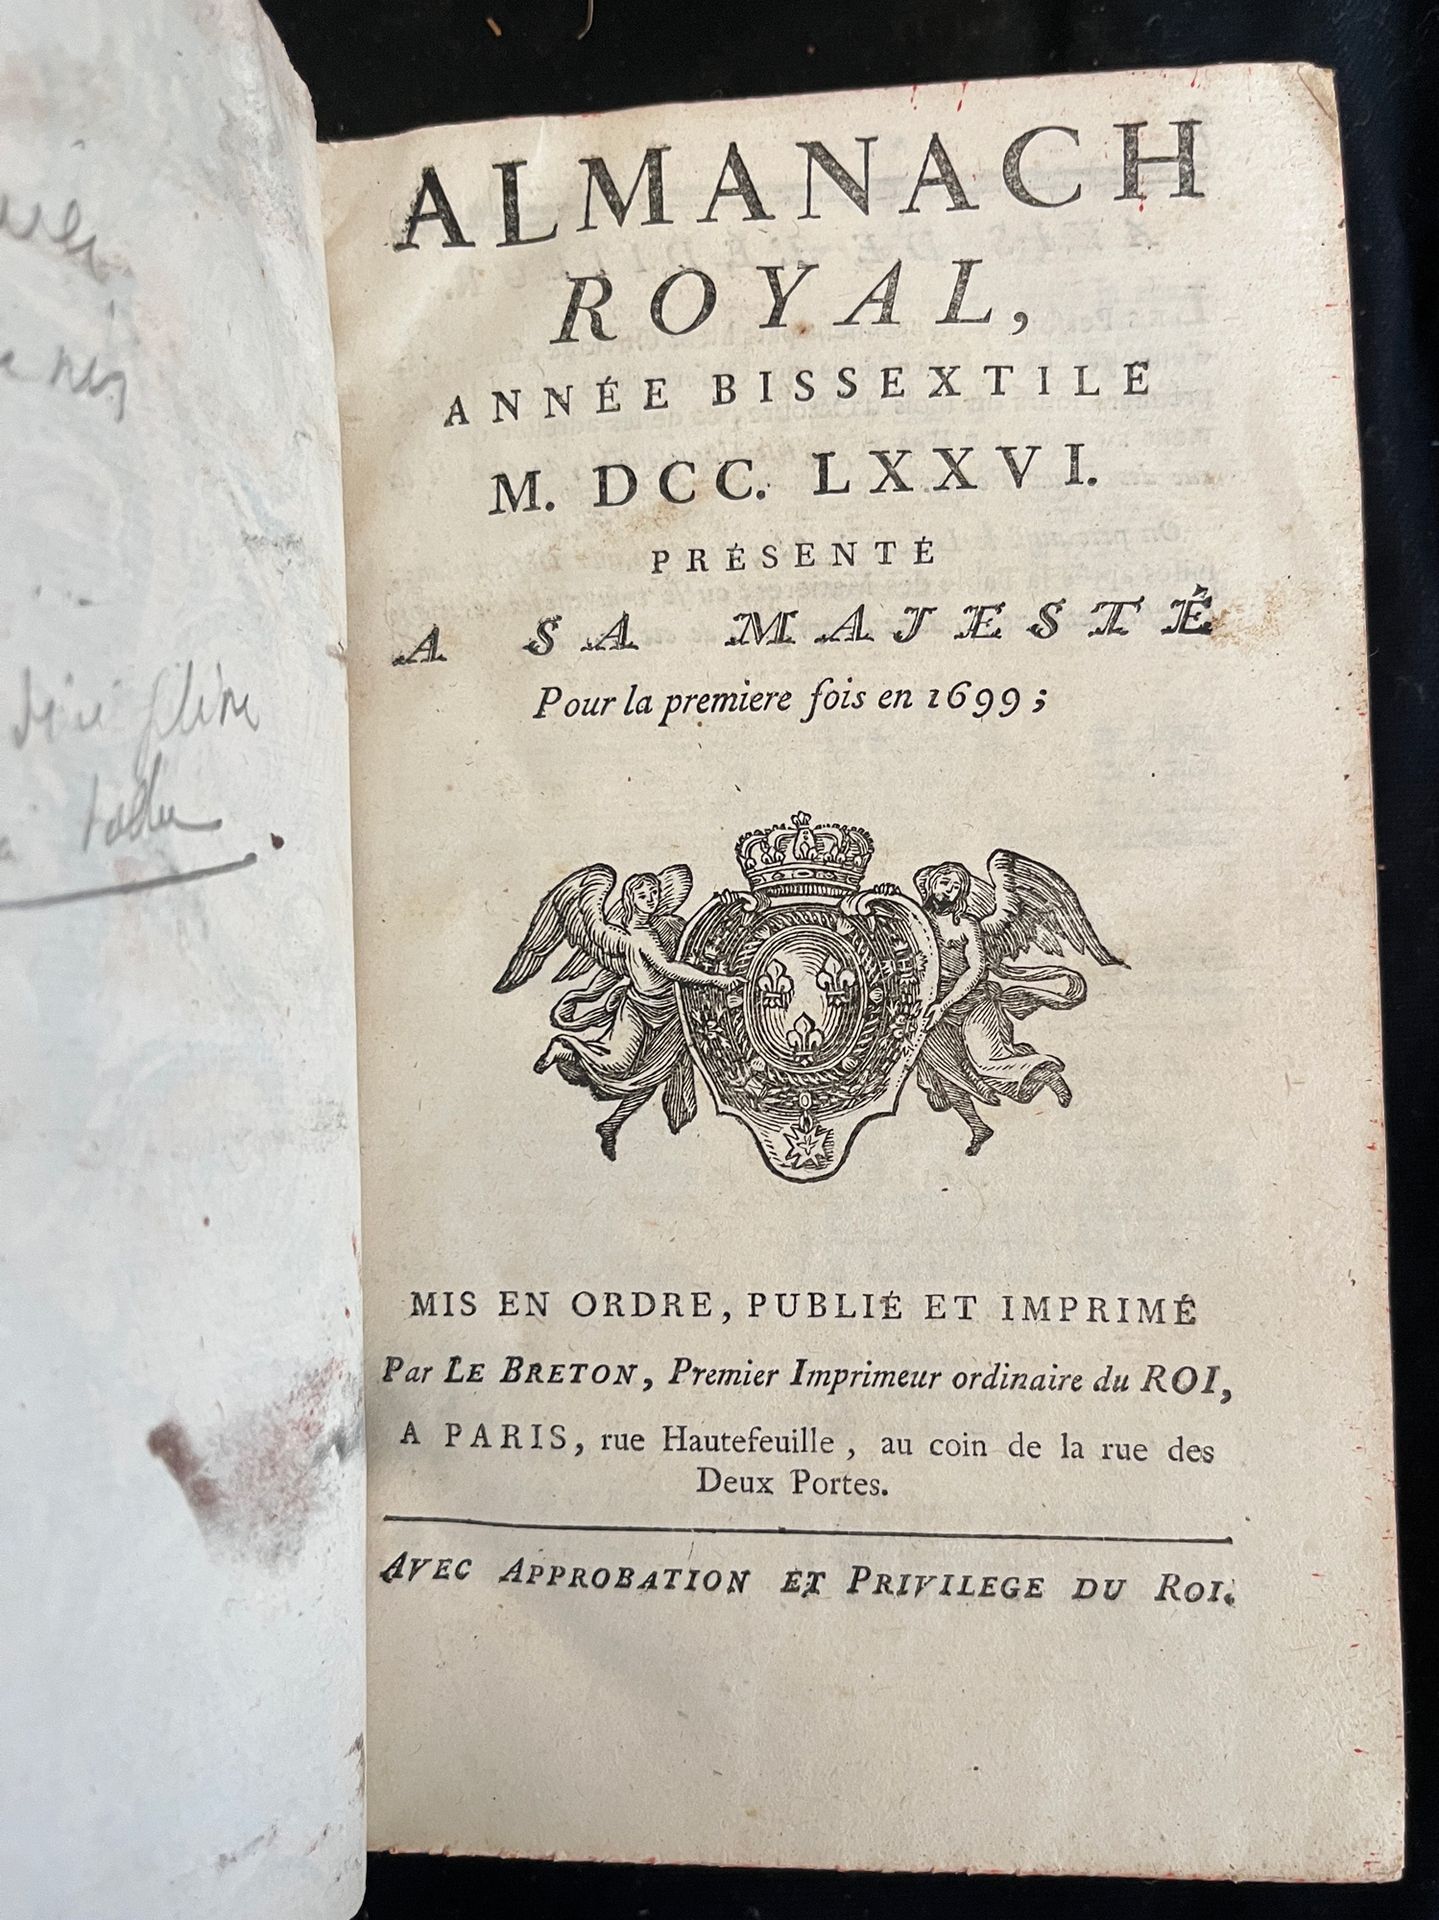 Null [ALMANACH]
Almanach royal pour l'an bissextile MDCCLXXVI. Paris, chez Le Br&hellip;